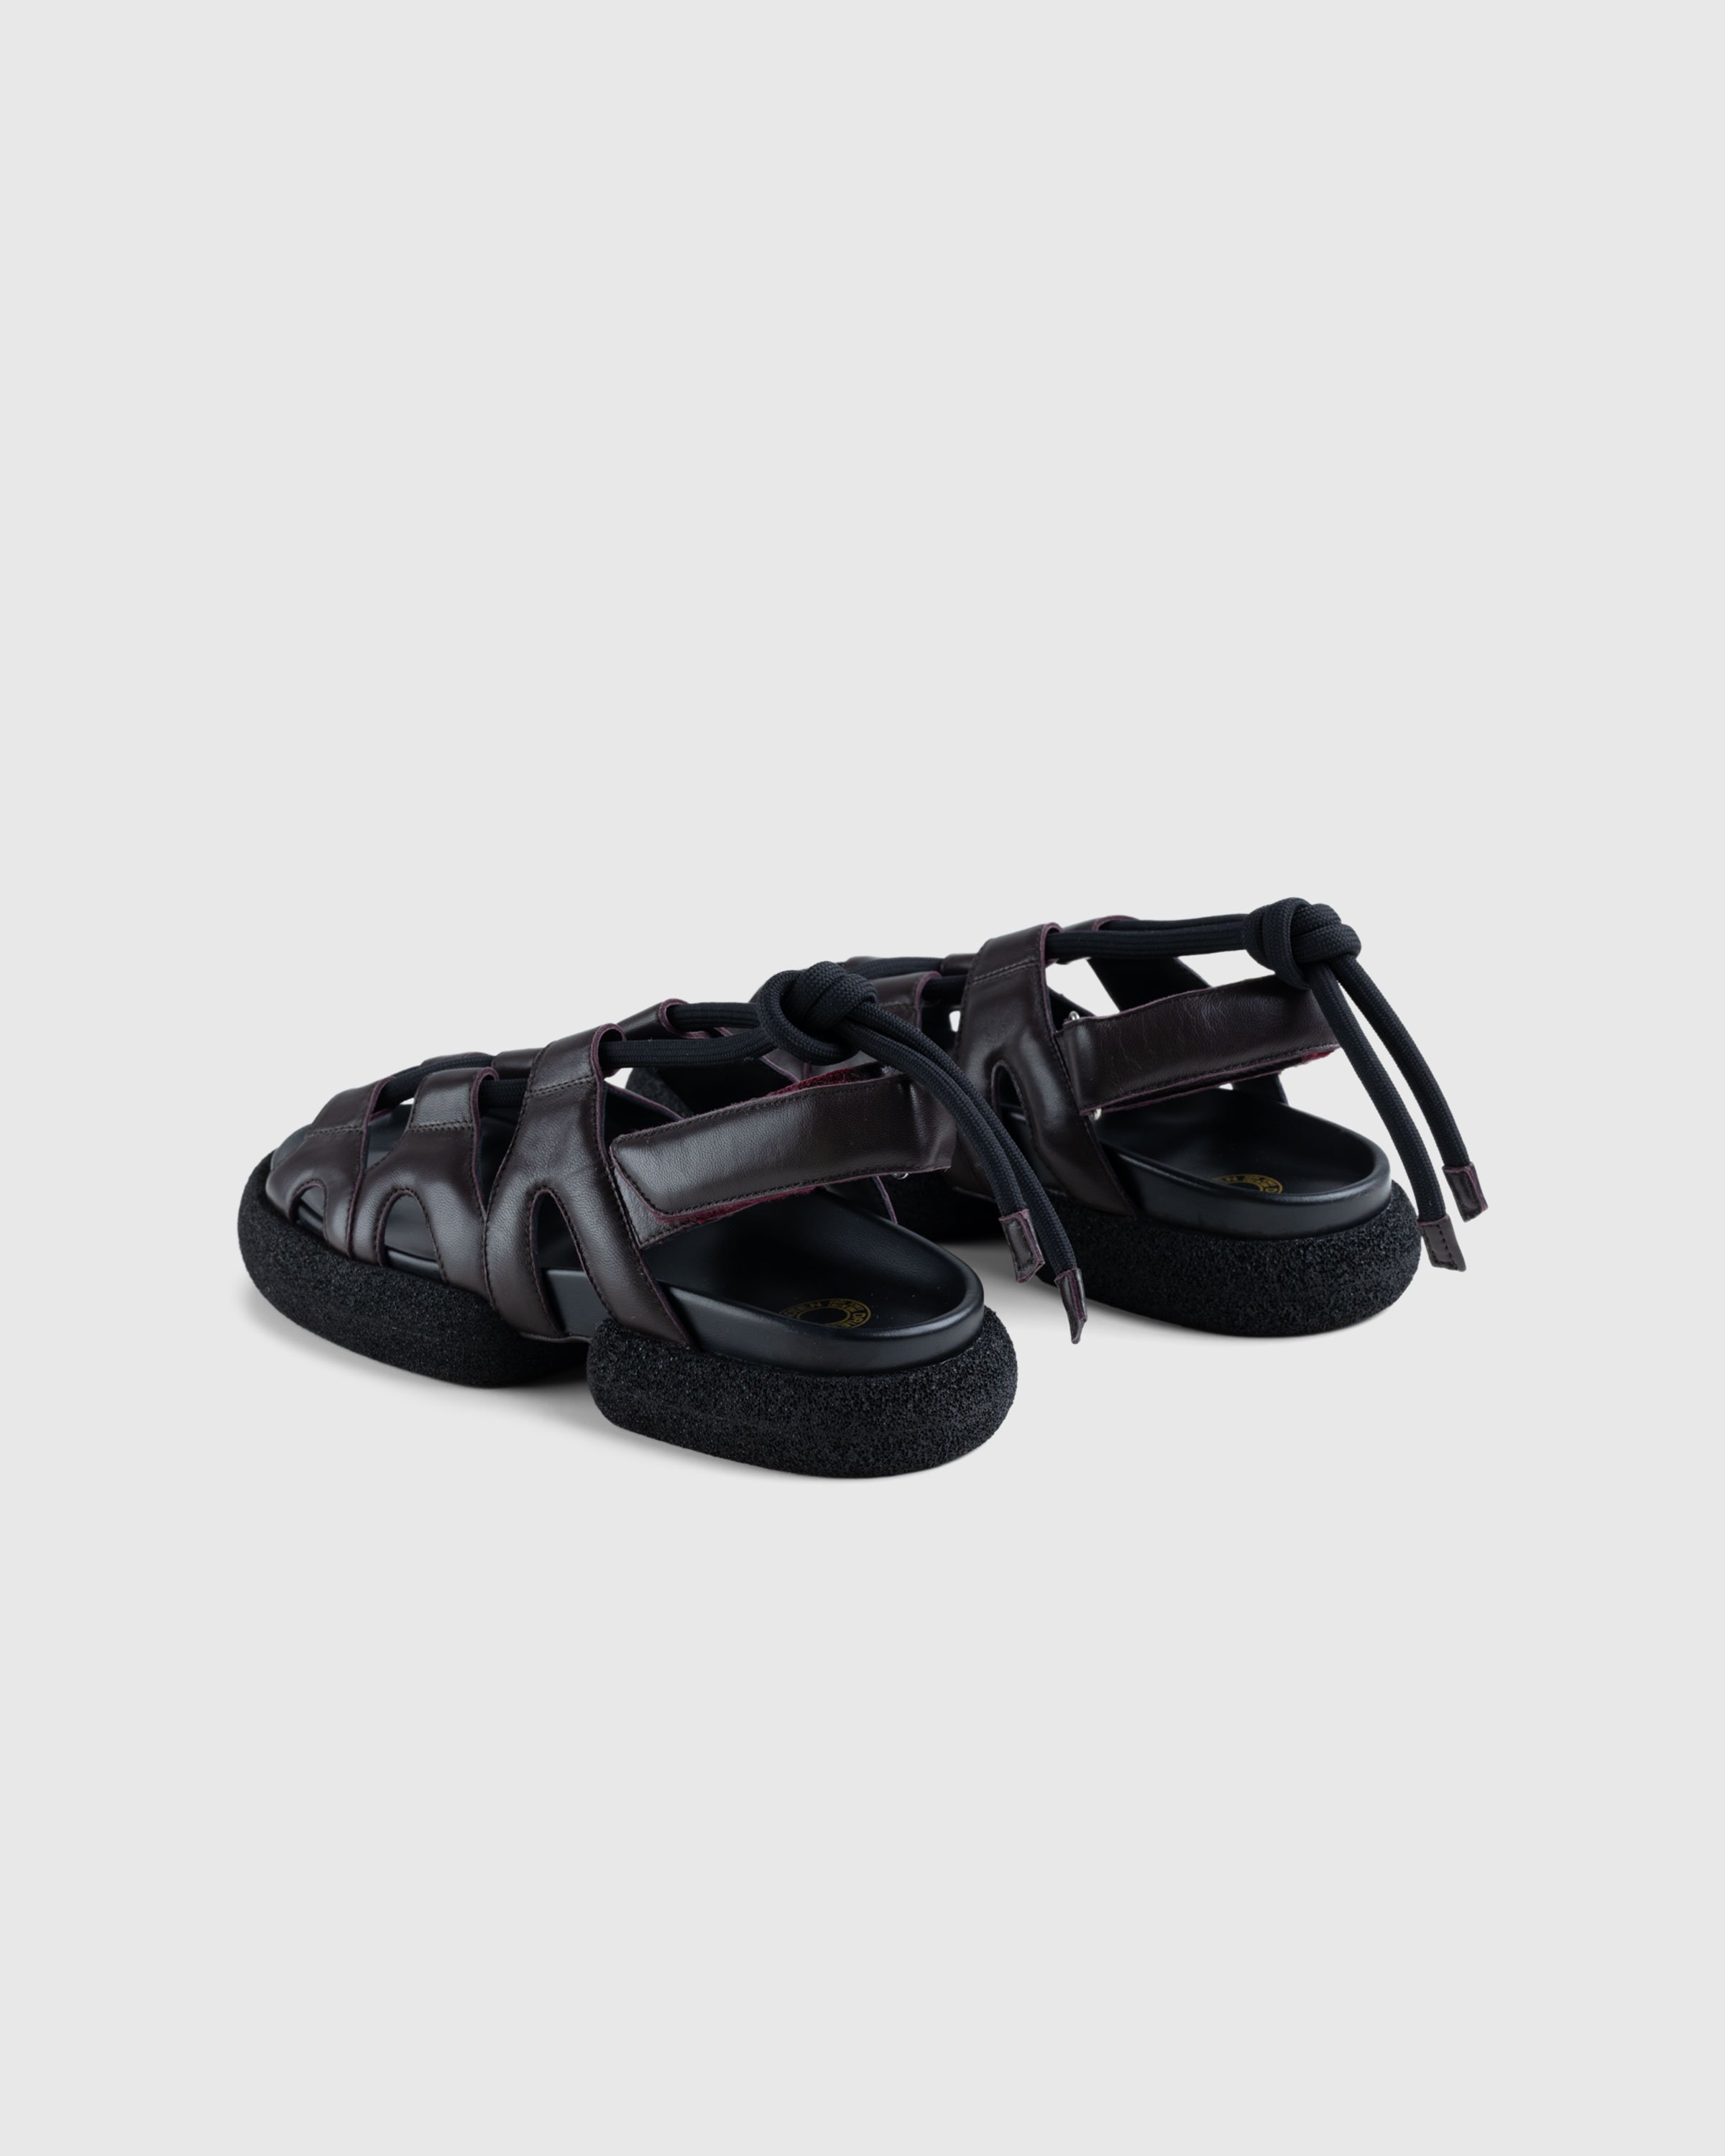 Dries van Noten - Heavy Platform Sandals Bordeaux - Footwear - Red - Image 4